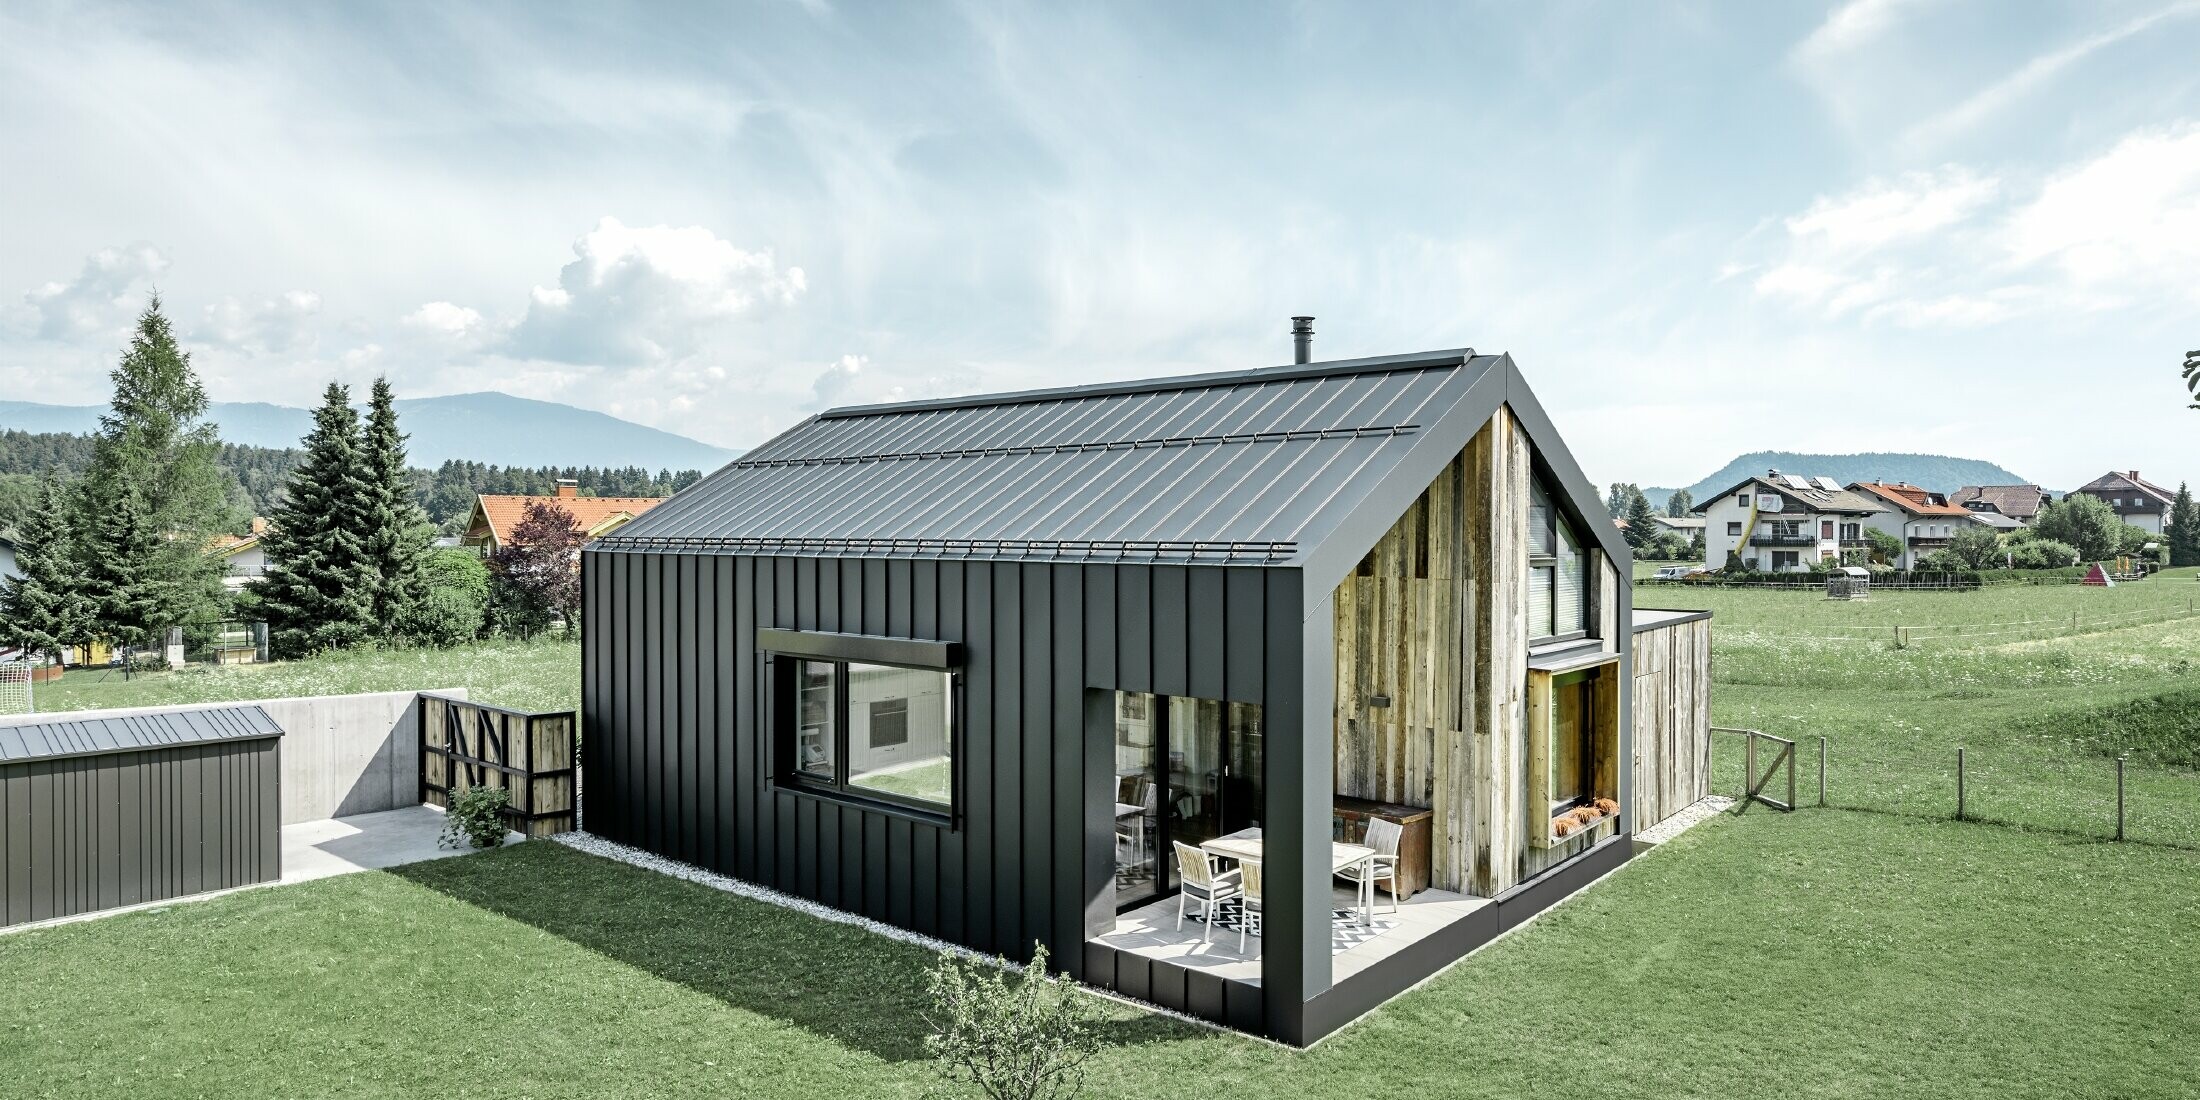 Rodinný dům se sedlovou střechou a fasádou pokrytou plechem PREFALZ v barvě P.10 antracit. Střecha plynule přechází do fasády, která je doplněna o dřevěné prvky.